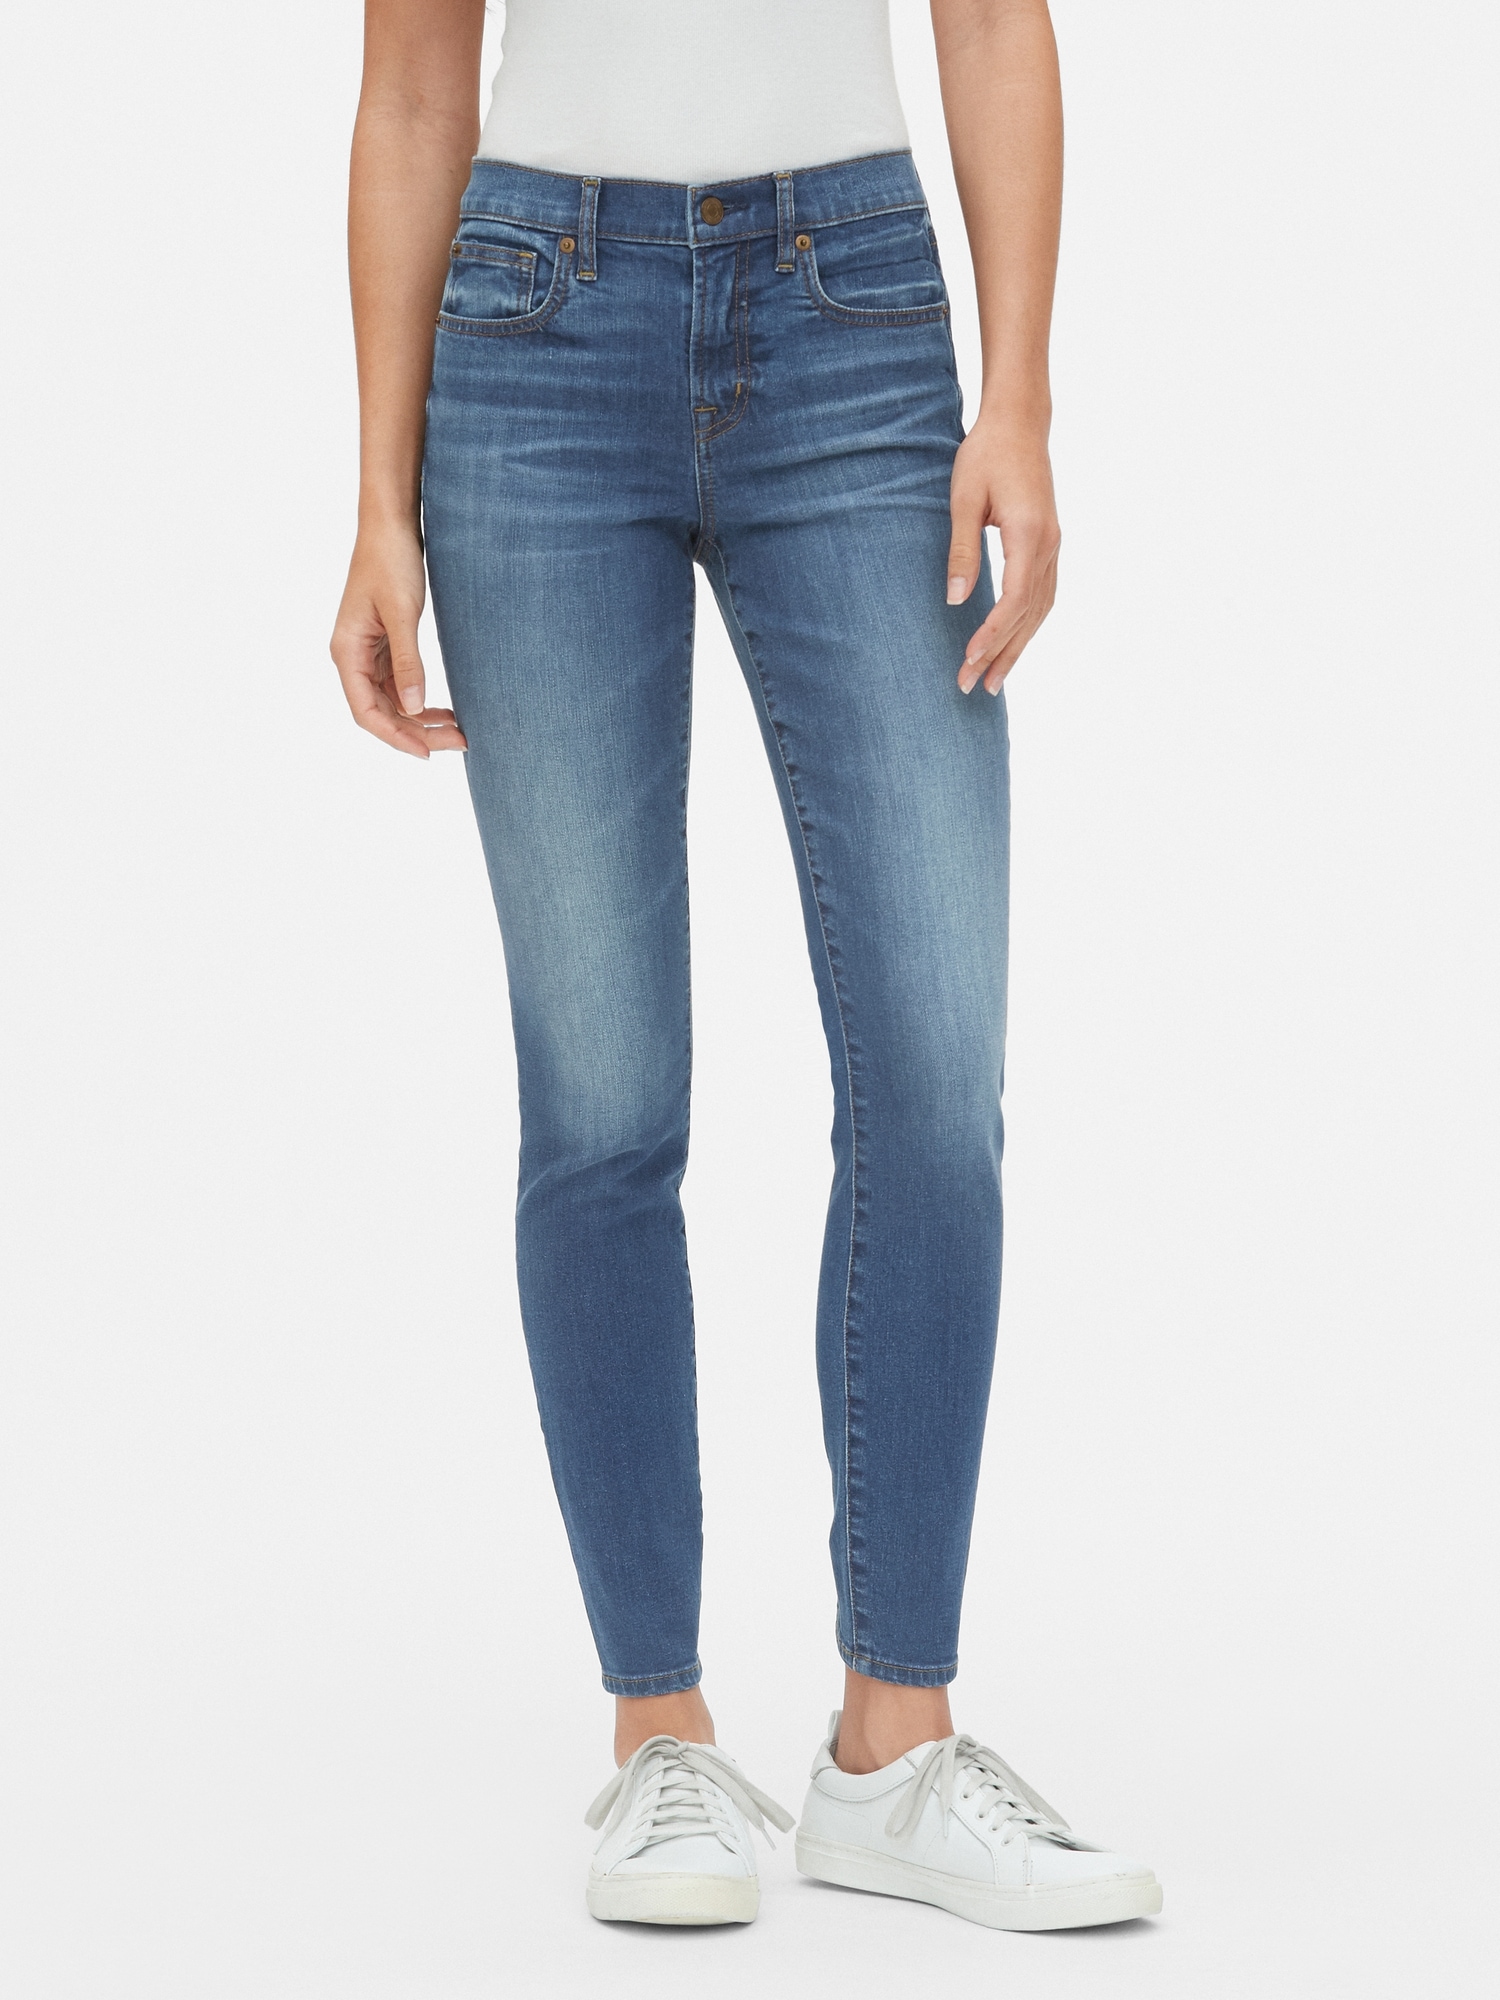 tan jeans womens bootcut